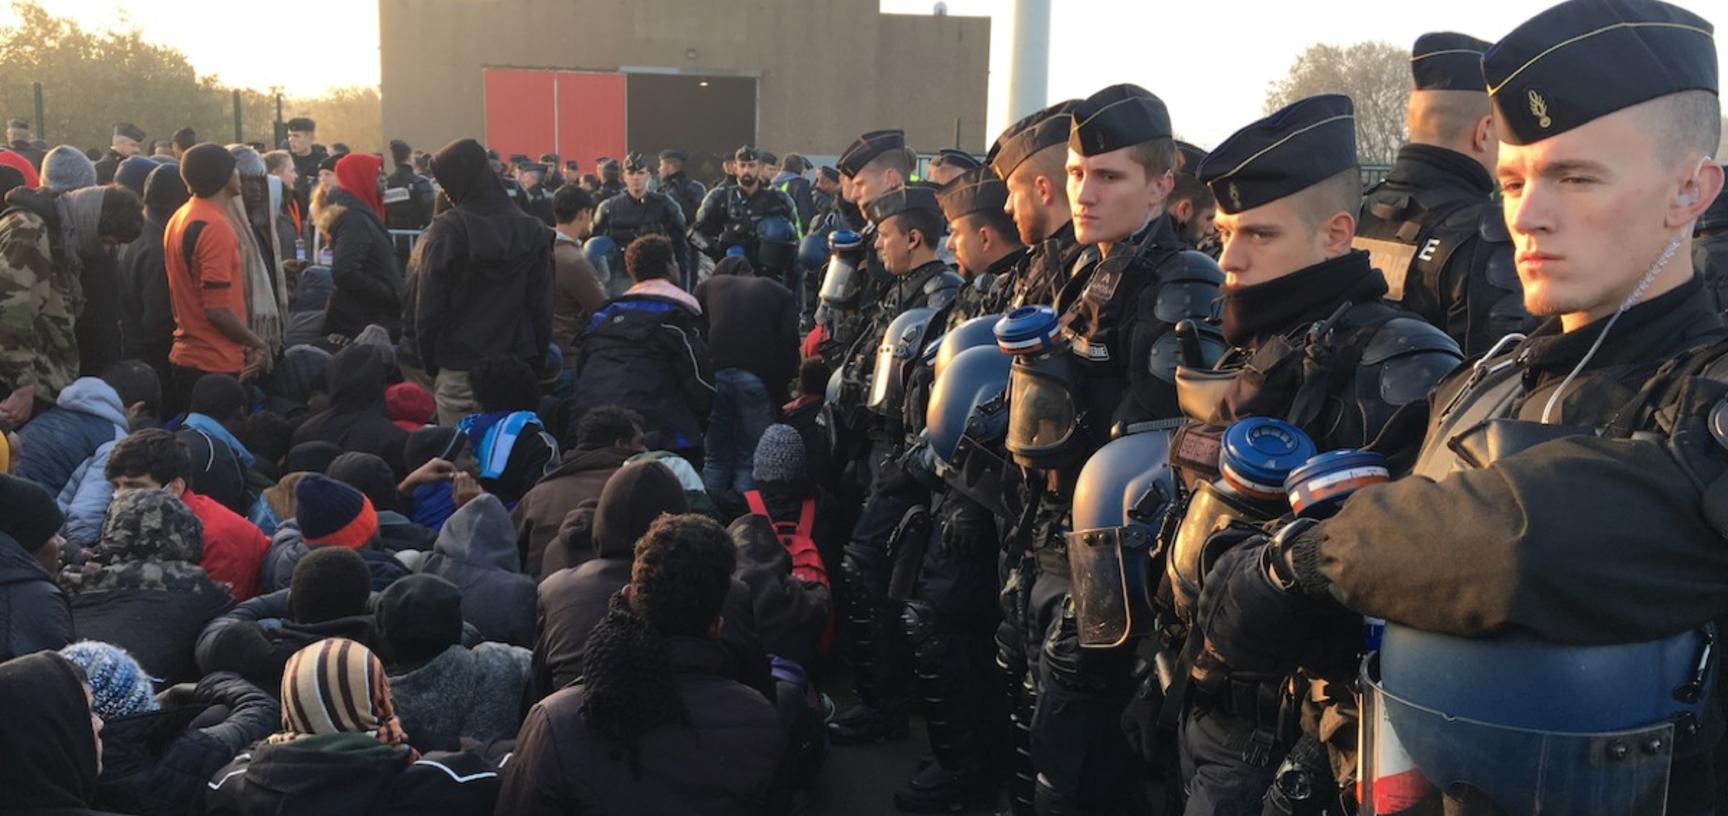 Migrants waiting to enter the hangar at Calais.